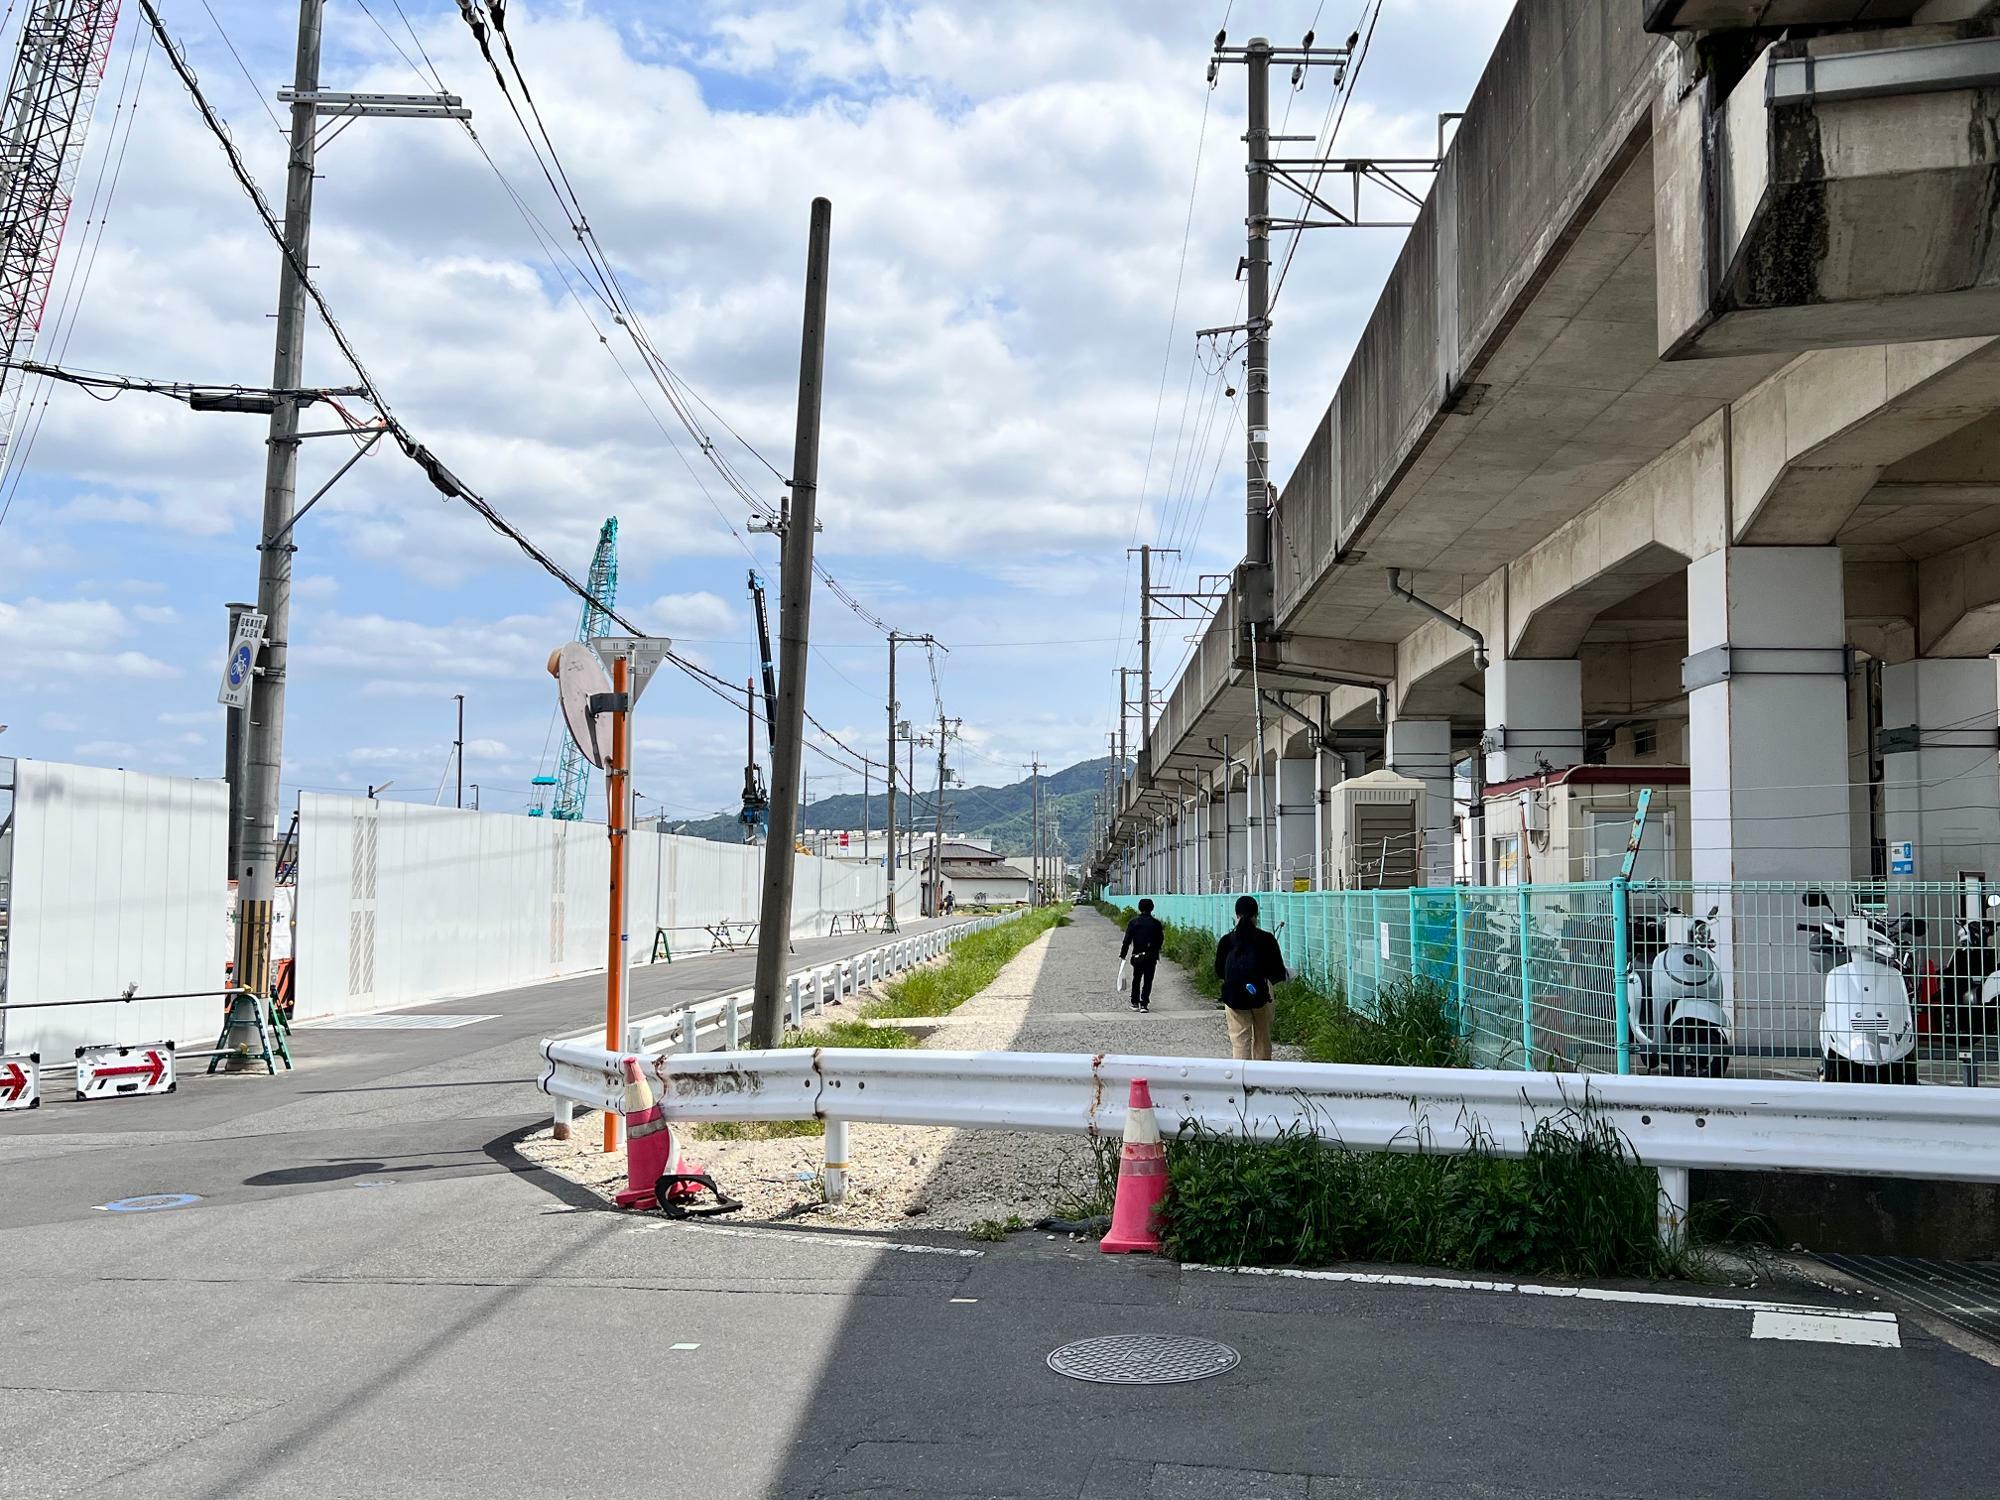 星田駅から長尾方面へ行くと、高架横にまっすぐな砂利道と、その左側に舗装道路が